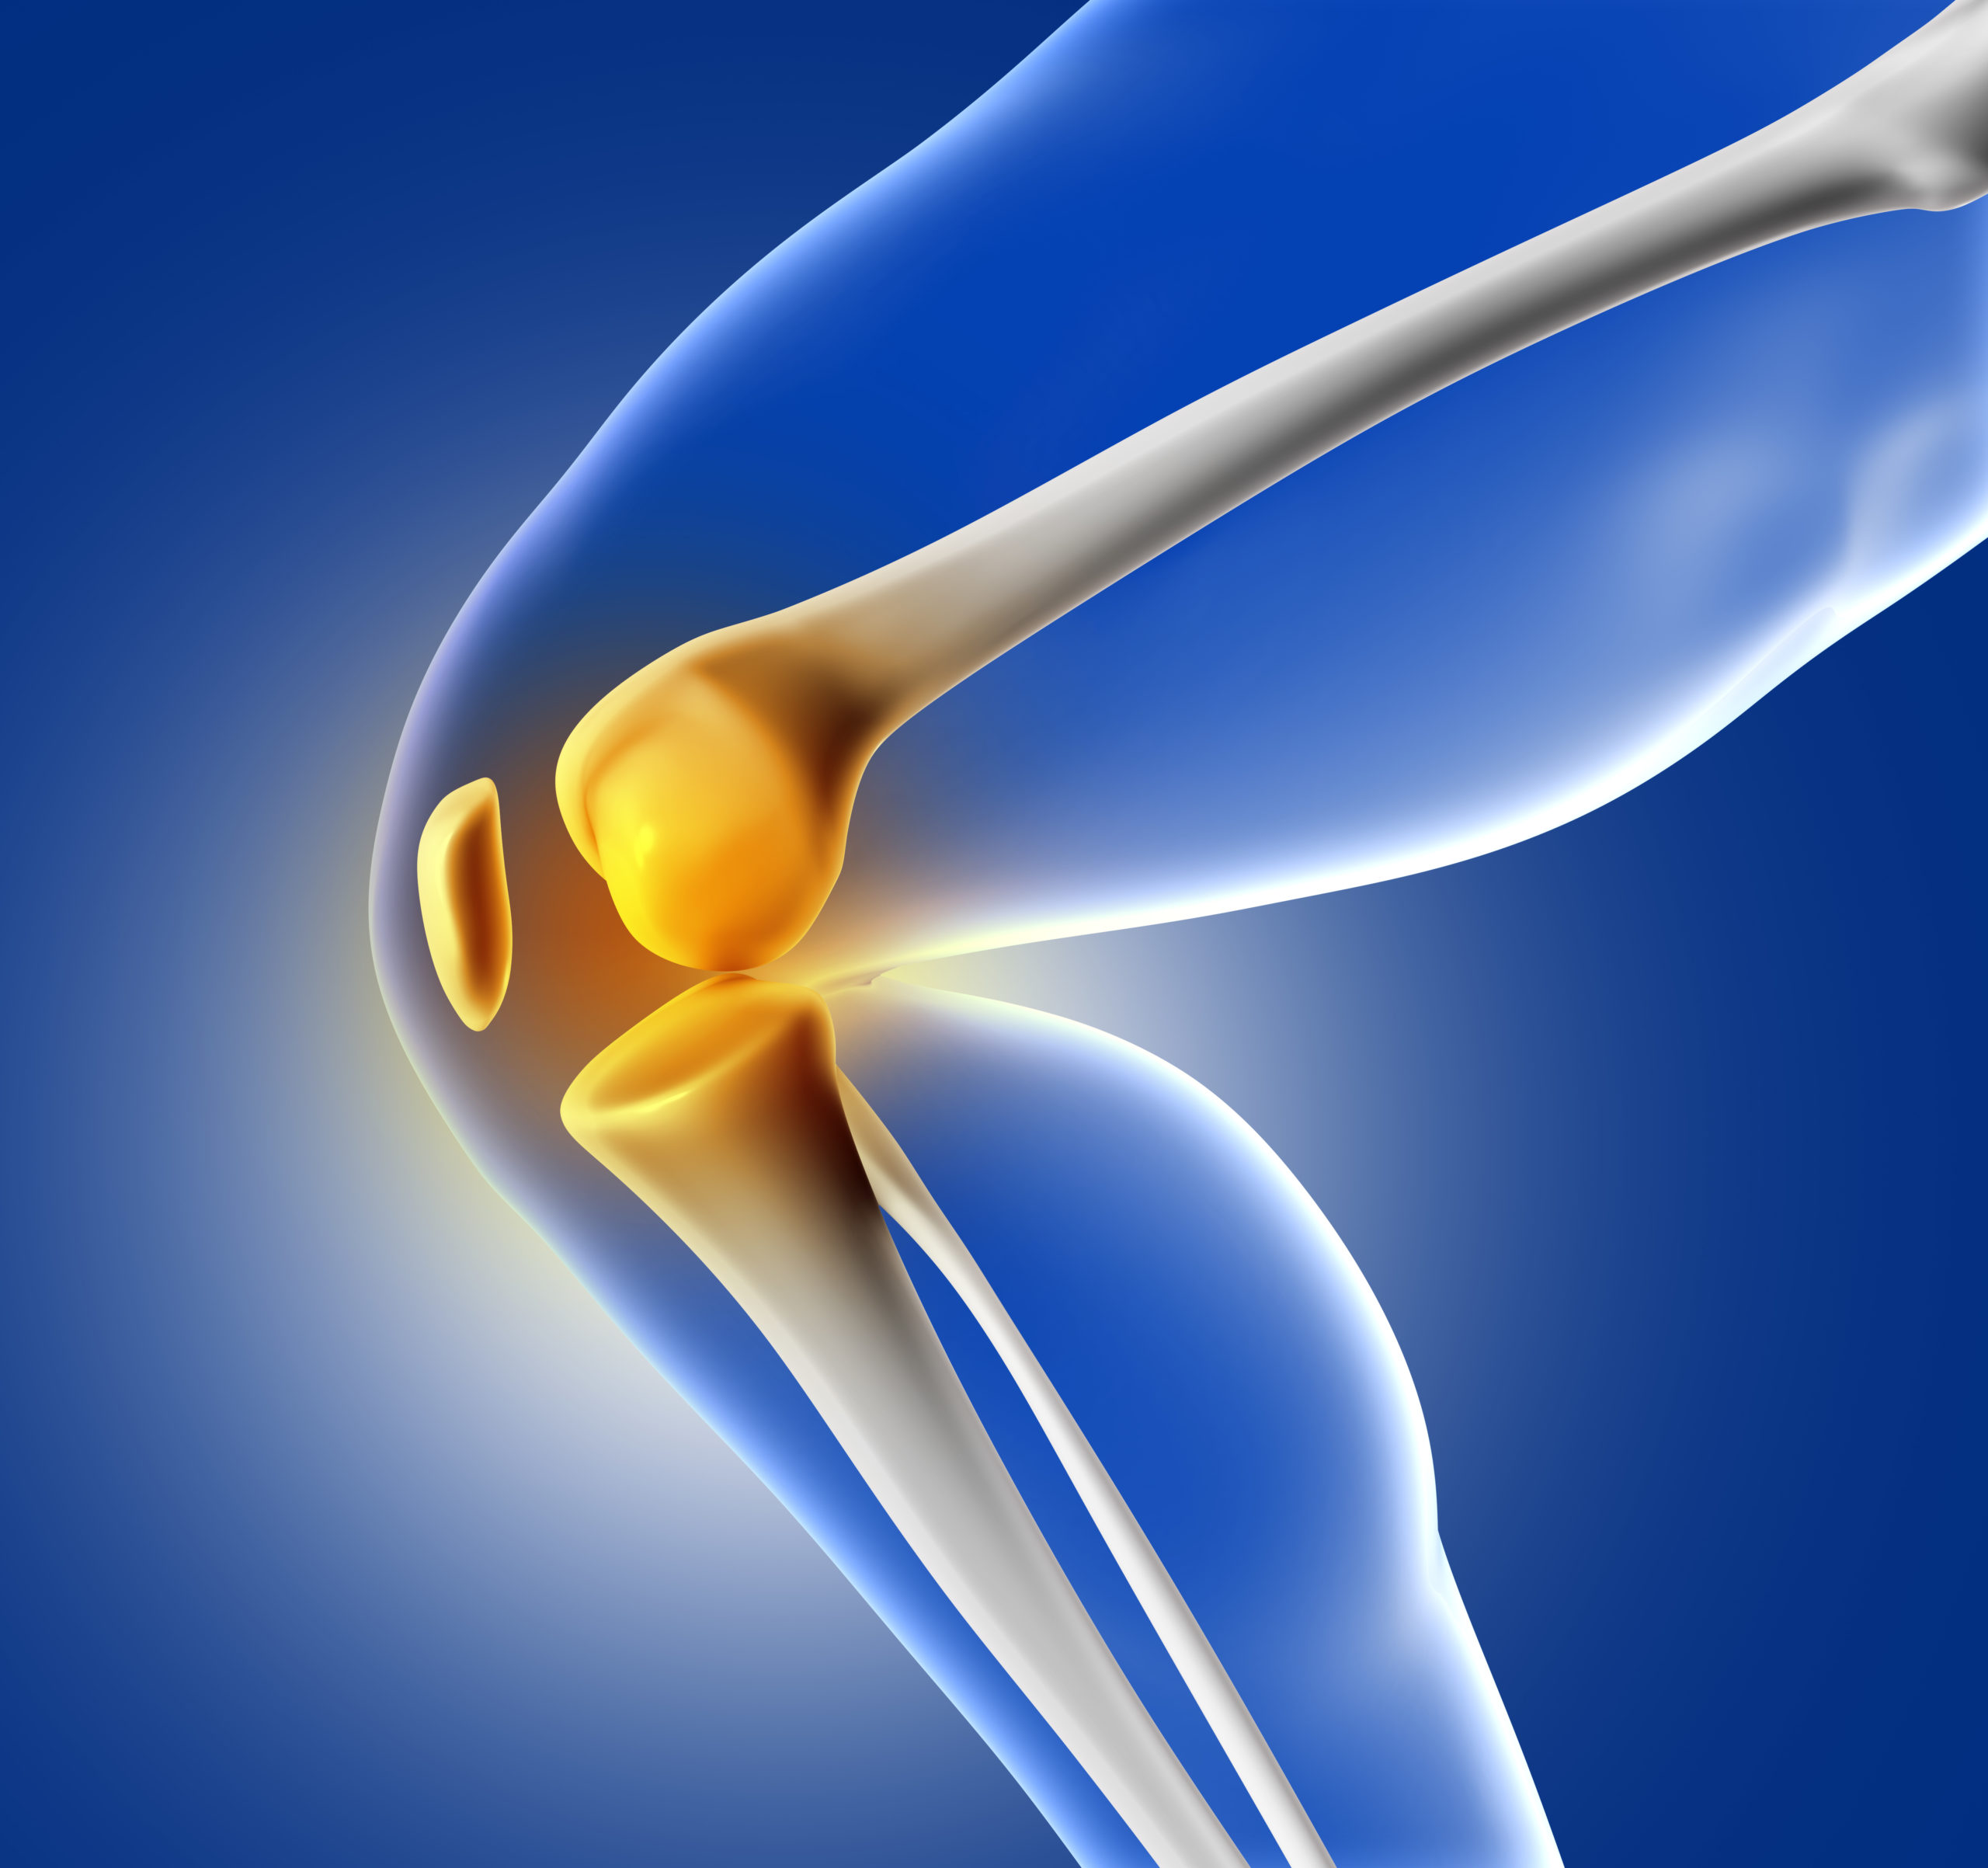 3D blue medical image of knee bone